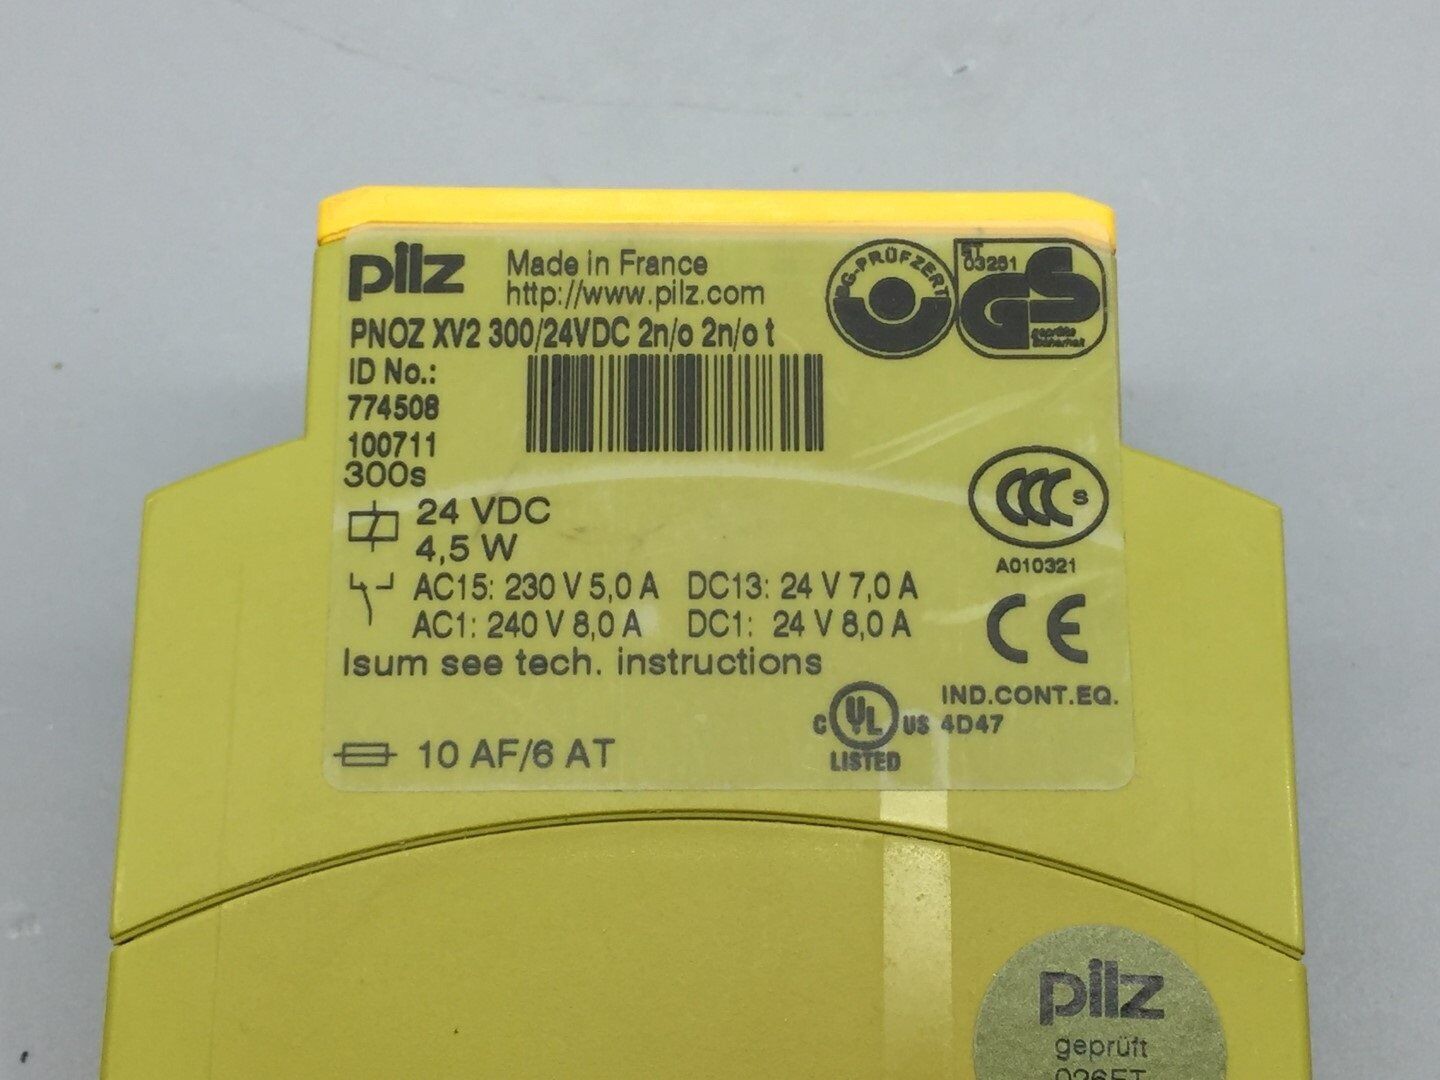 1PCS Pilz 774508 100711 SAFETY RELAY 24VDC PNOZ XV2